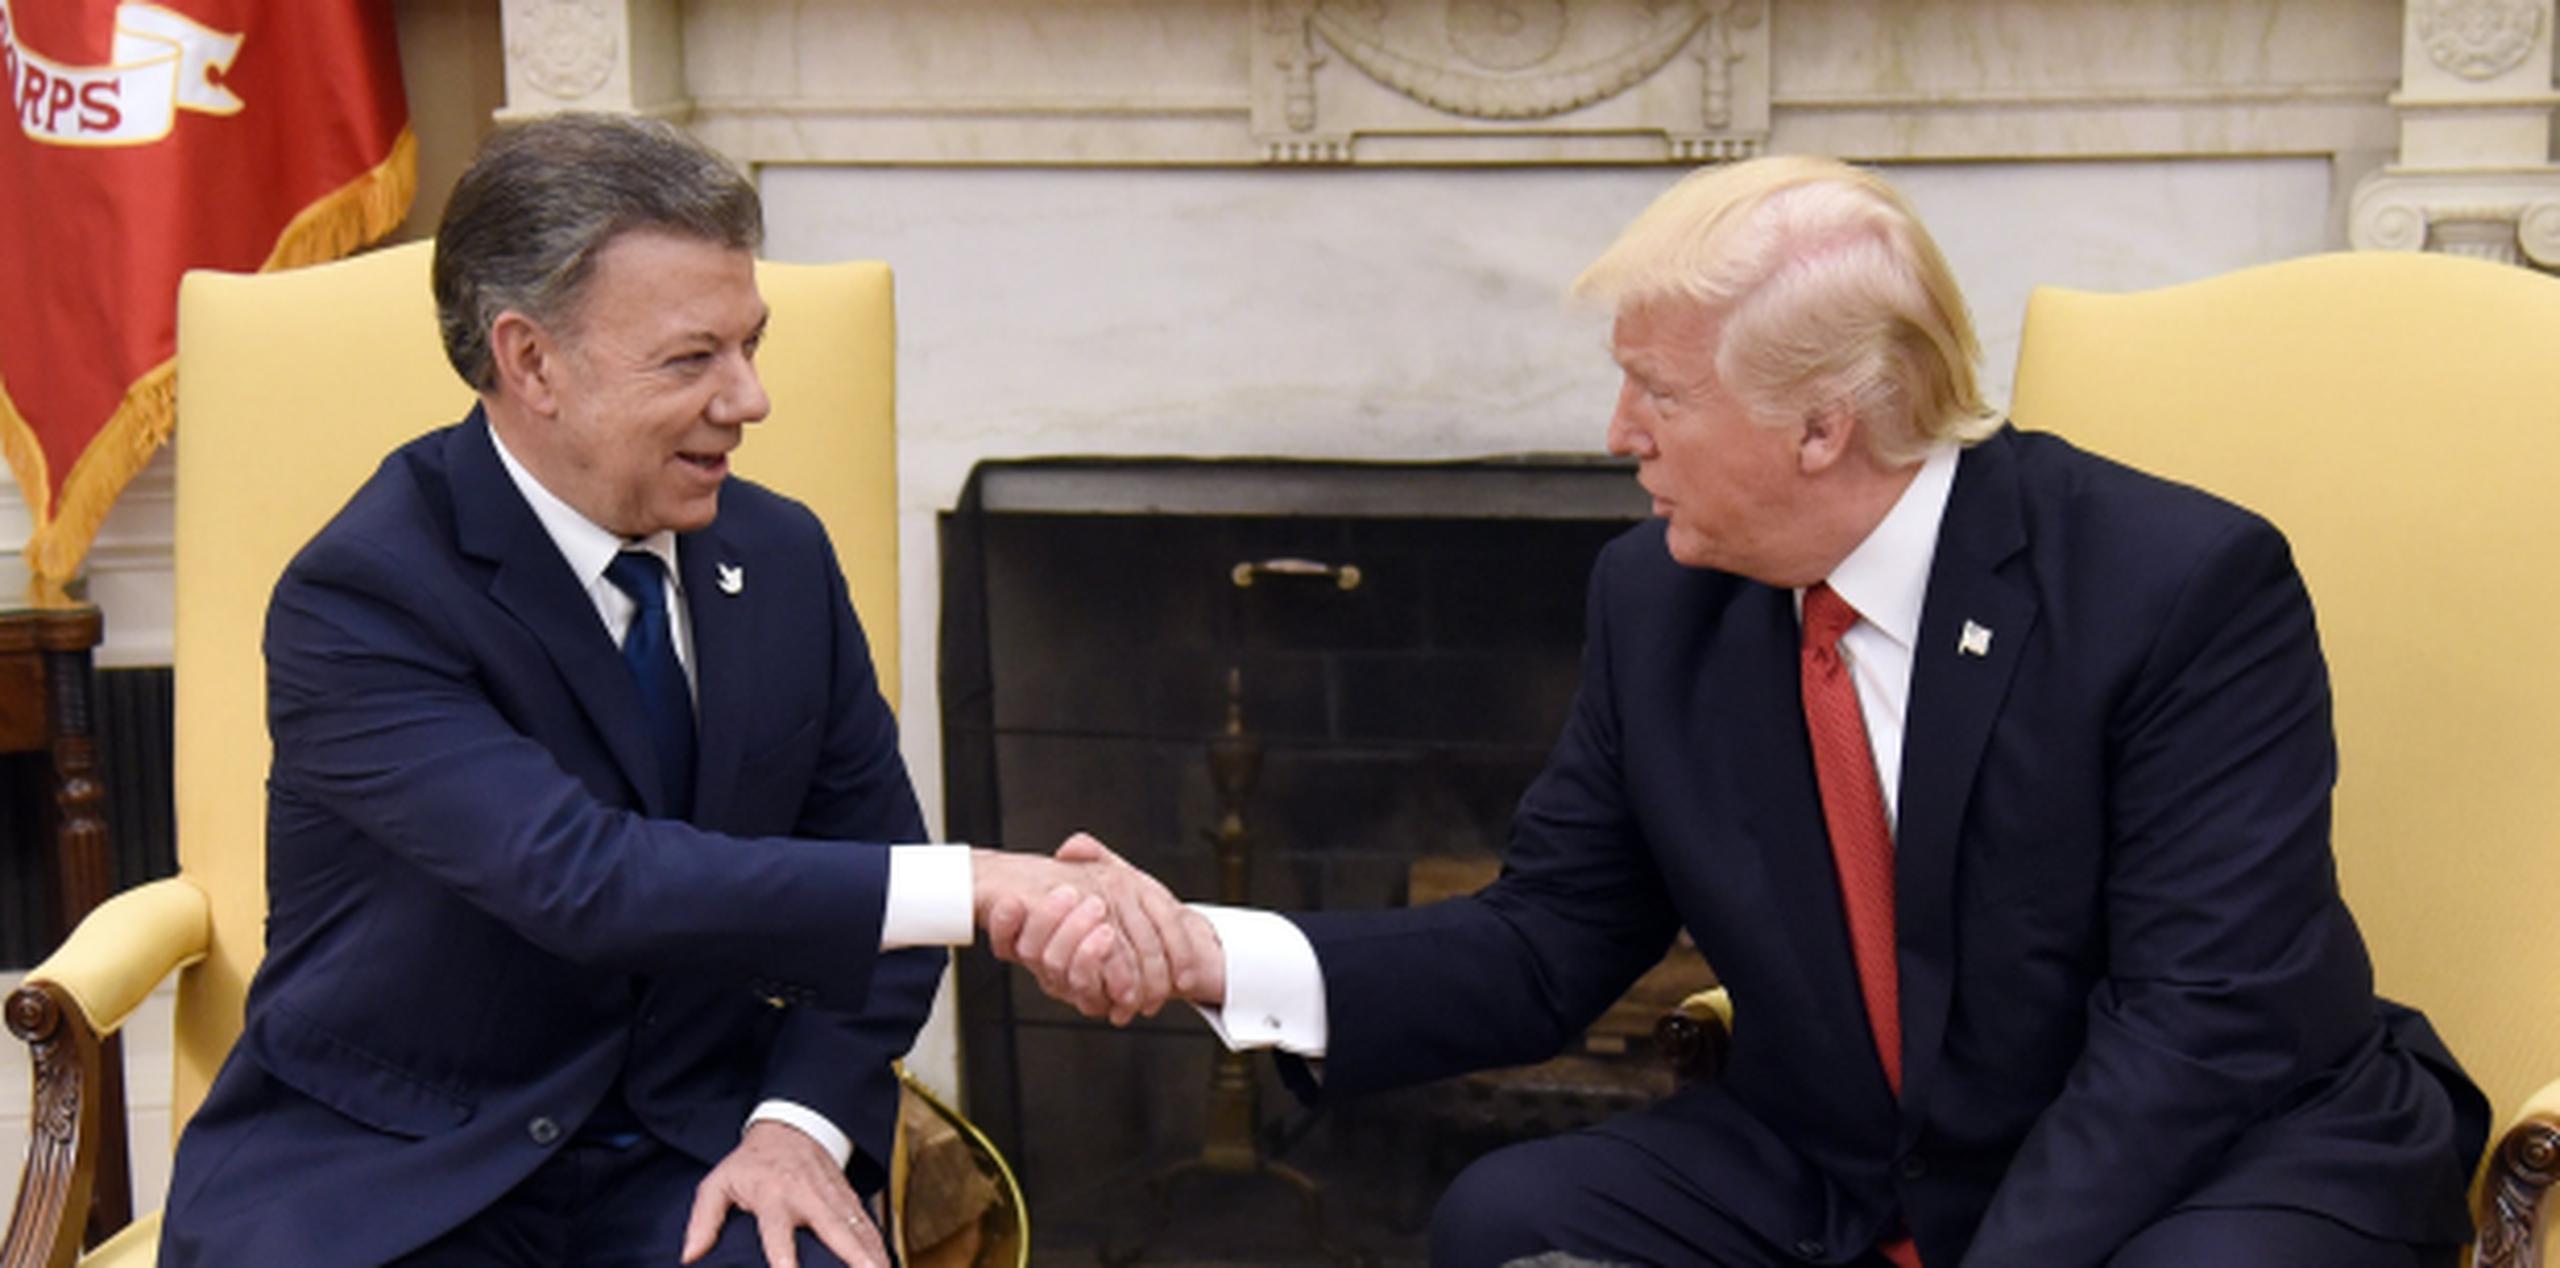 El presidente de Estados Unidos, Donald Trump, estrecha la mano del presidente de Colombia, Juan Manuel Santos, durante una reunión hoy en la Oficina Oval de la Casa Blanca. (EFE / Oliver Douliery)